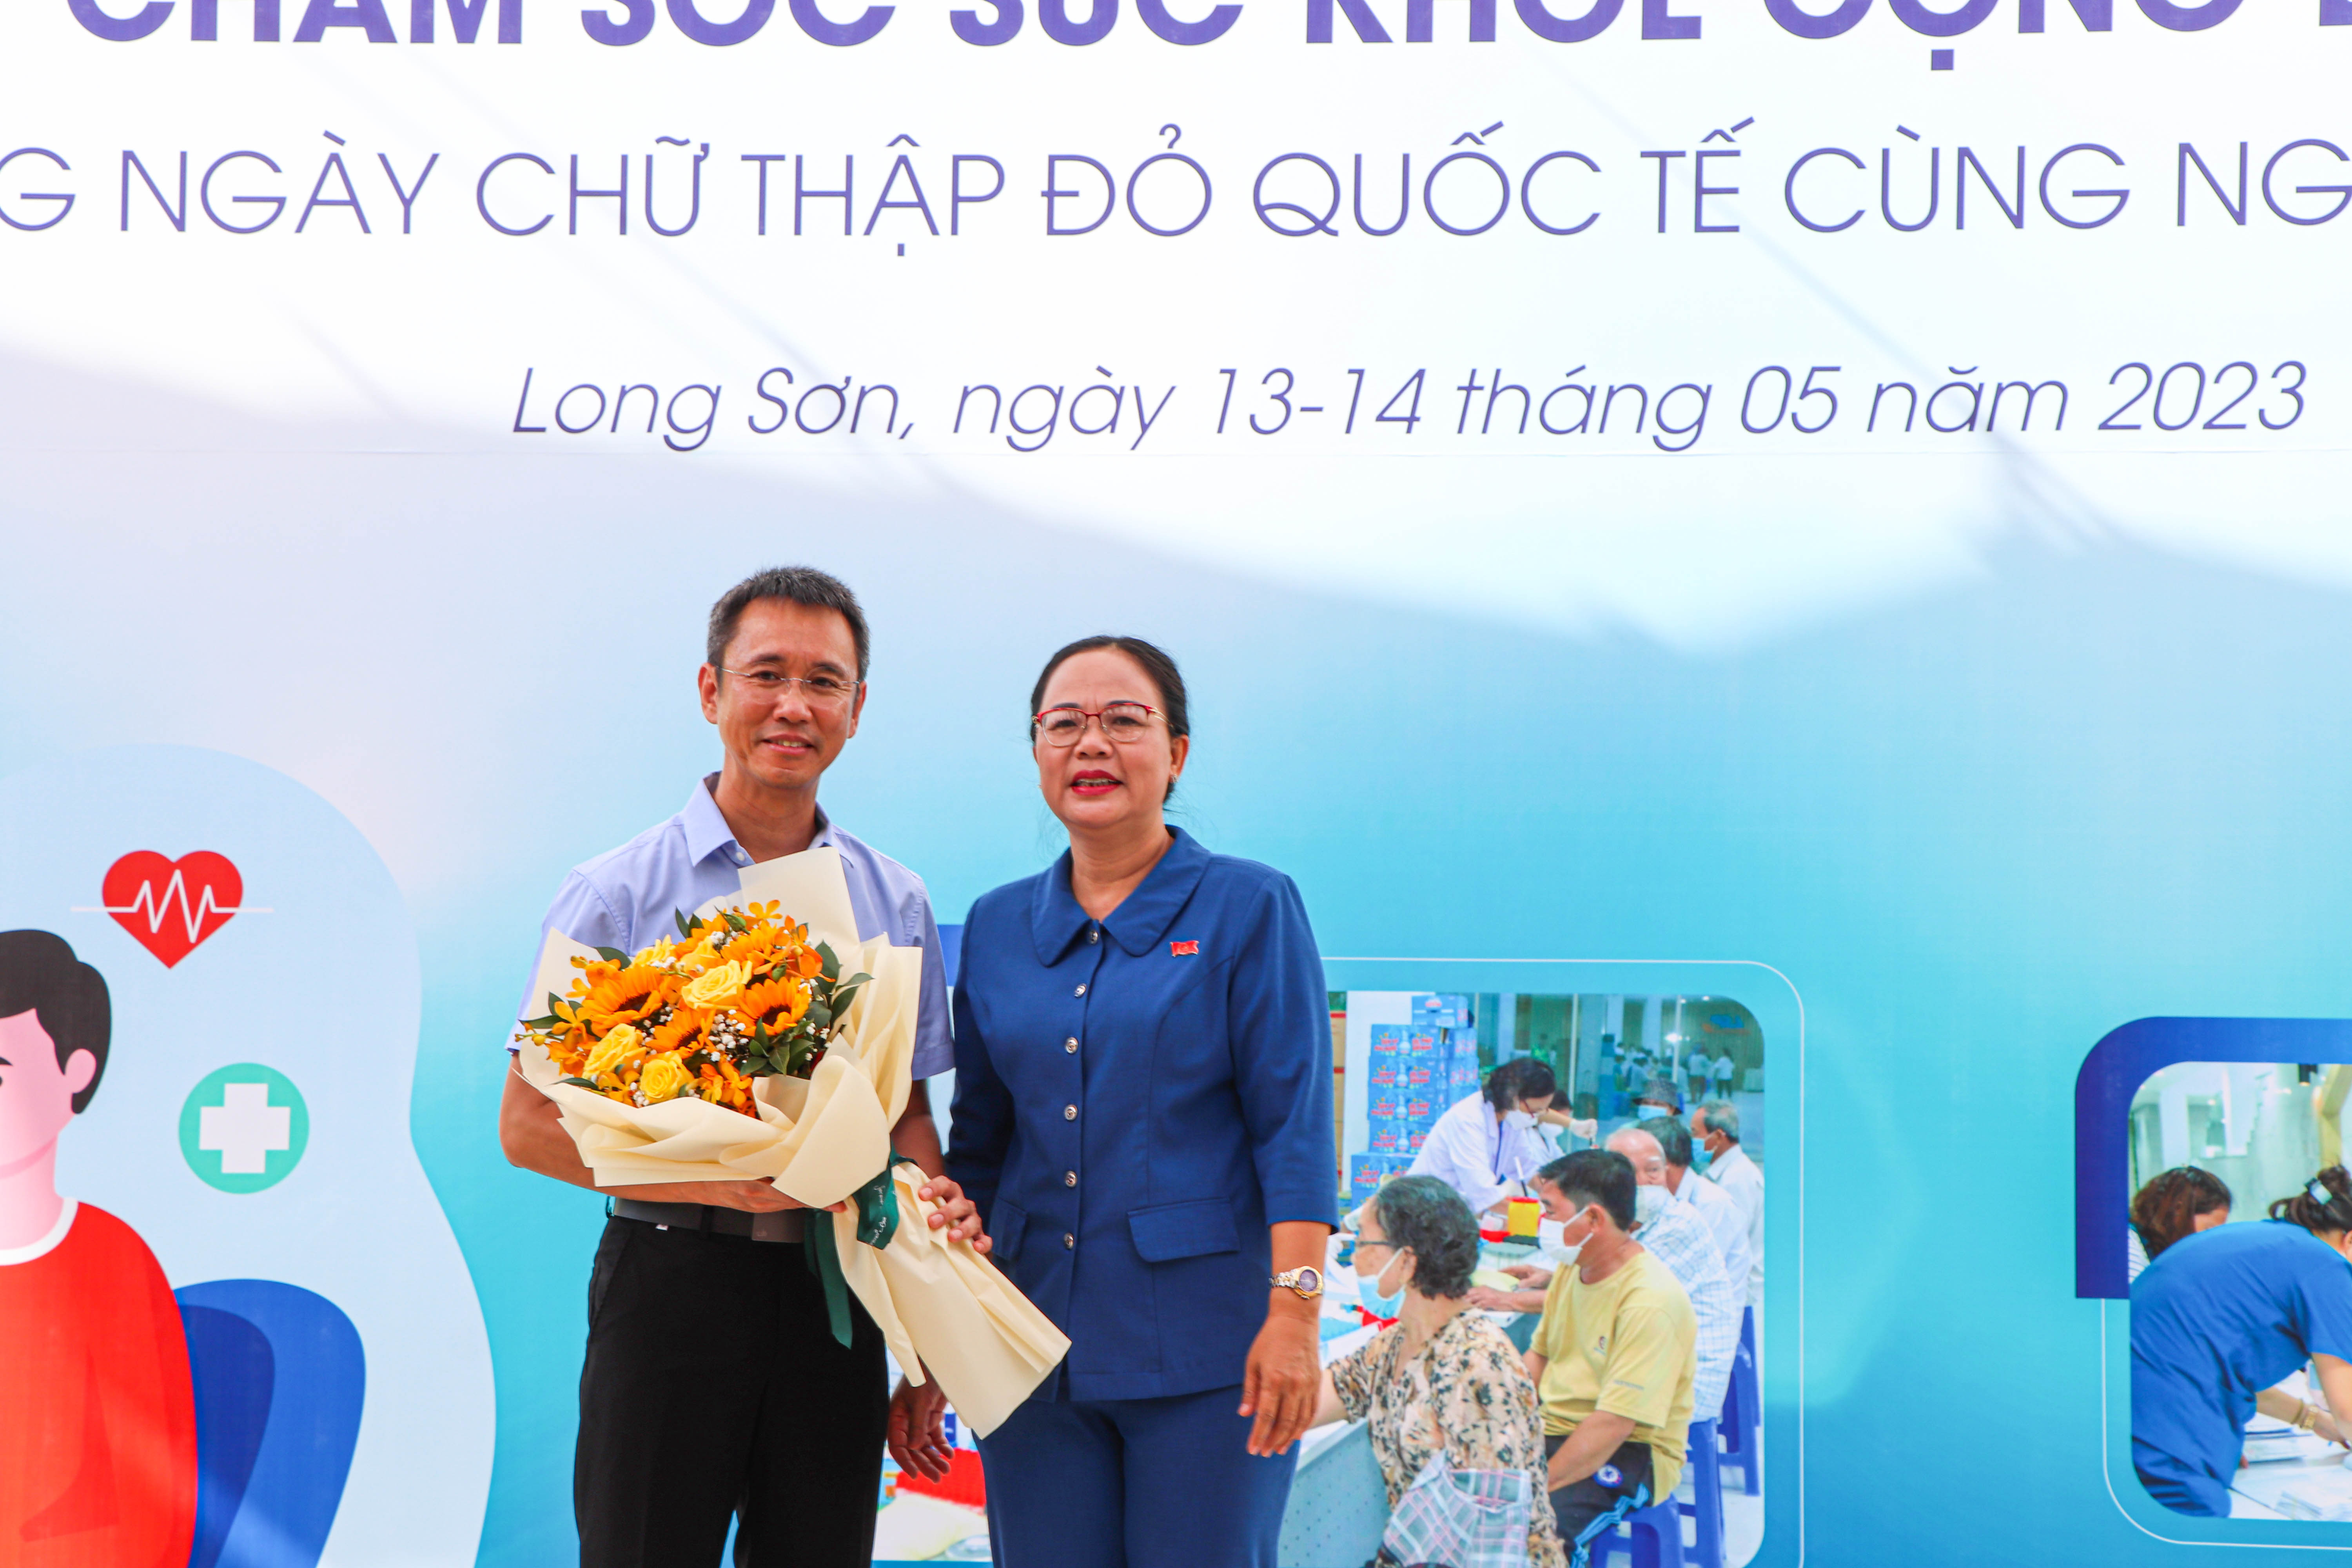 Bà Nguyễn Thị Thu Hương, Phó Chủ tịch UBND TP.Vũng Tàu tặng hoa cảm ơn Công ty TNHH Hóa dầu Long Sơn đã đồng hành cùng chính quyền địa phương thời gian qua.